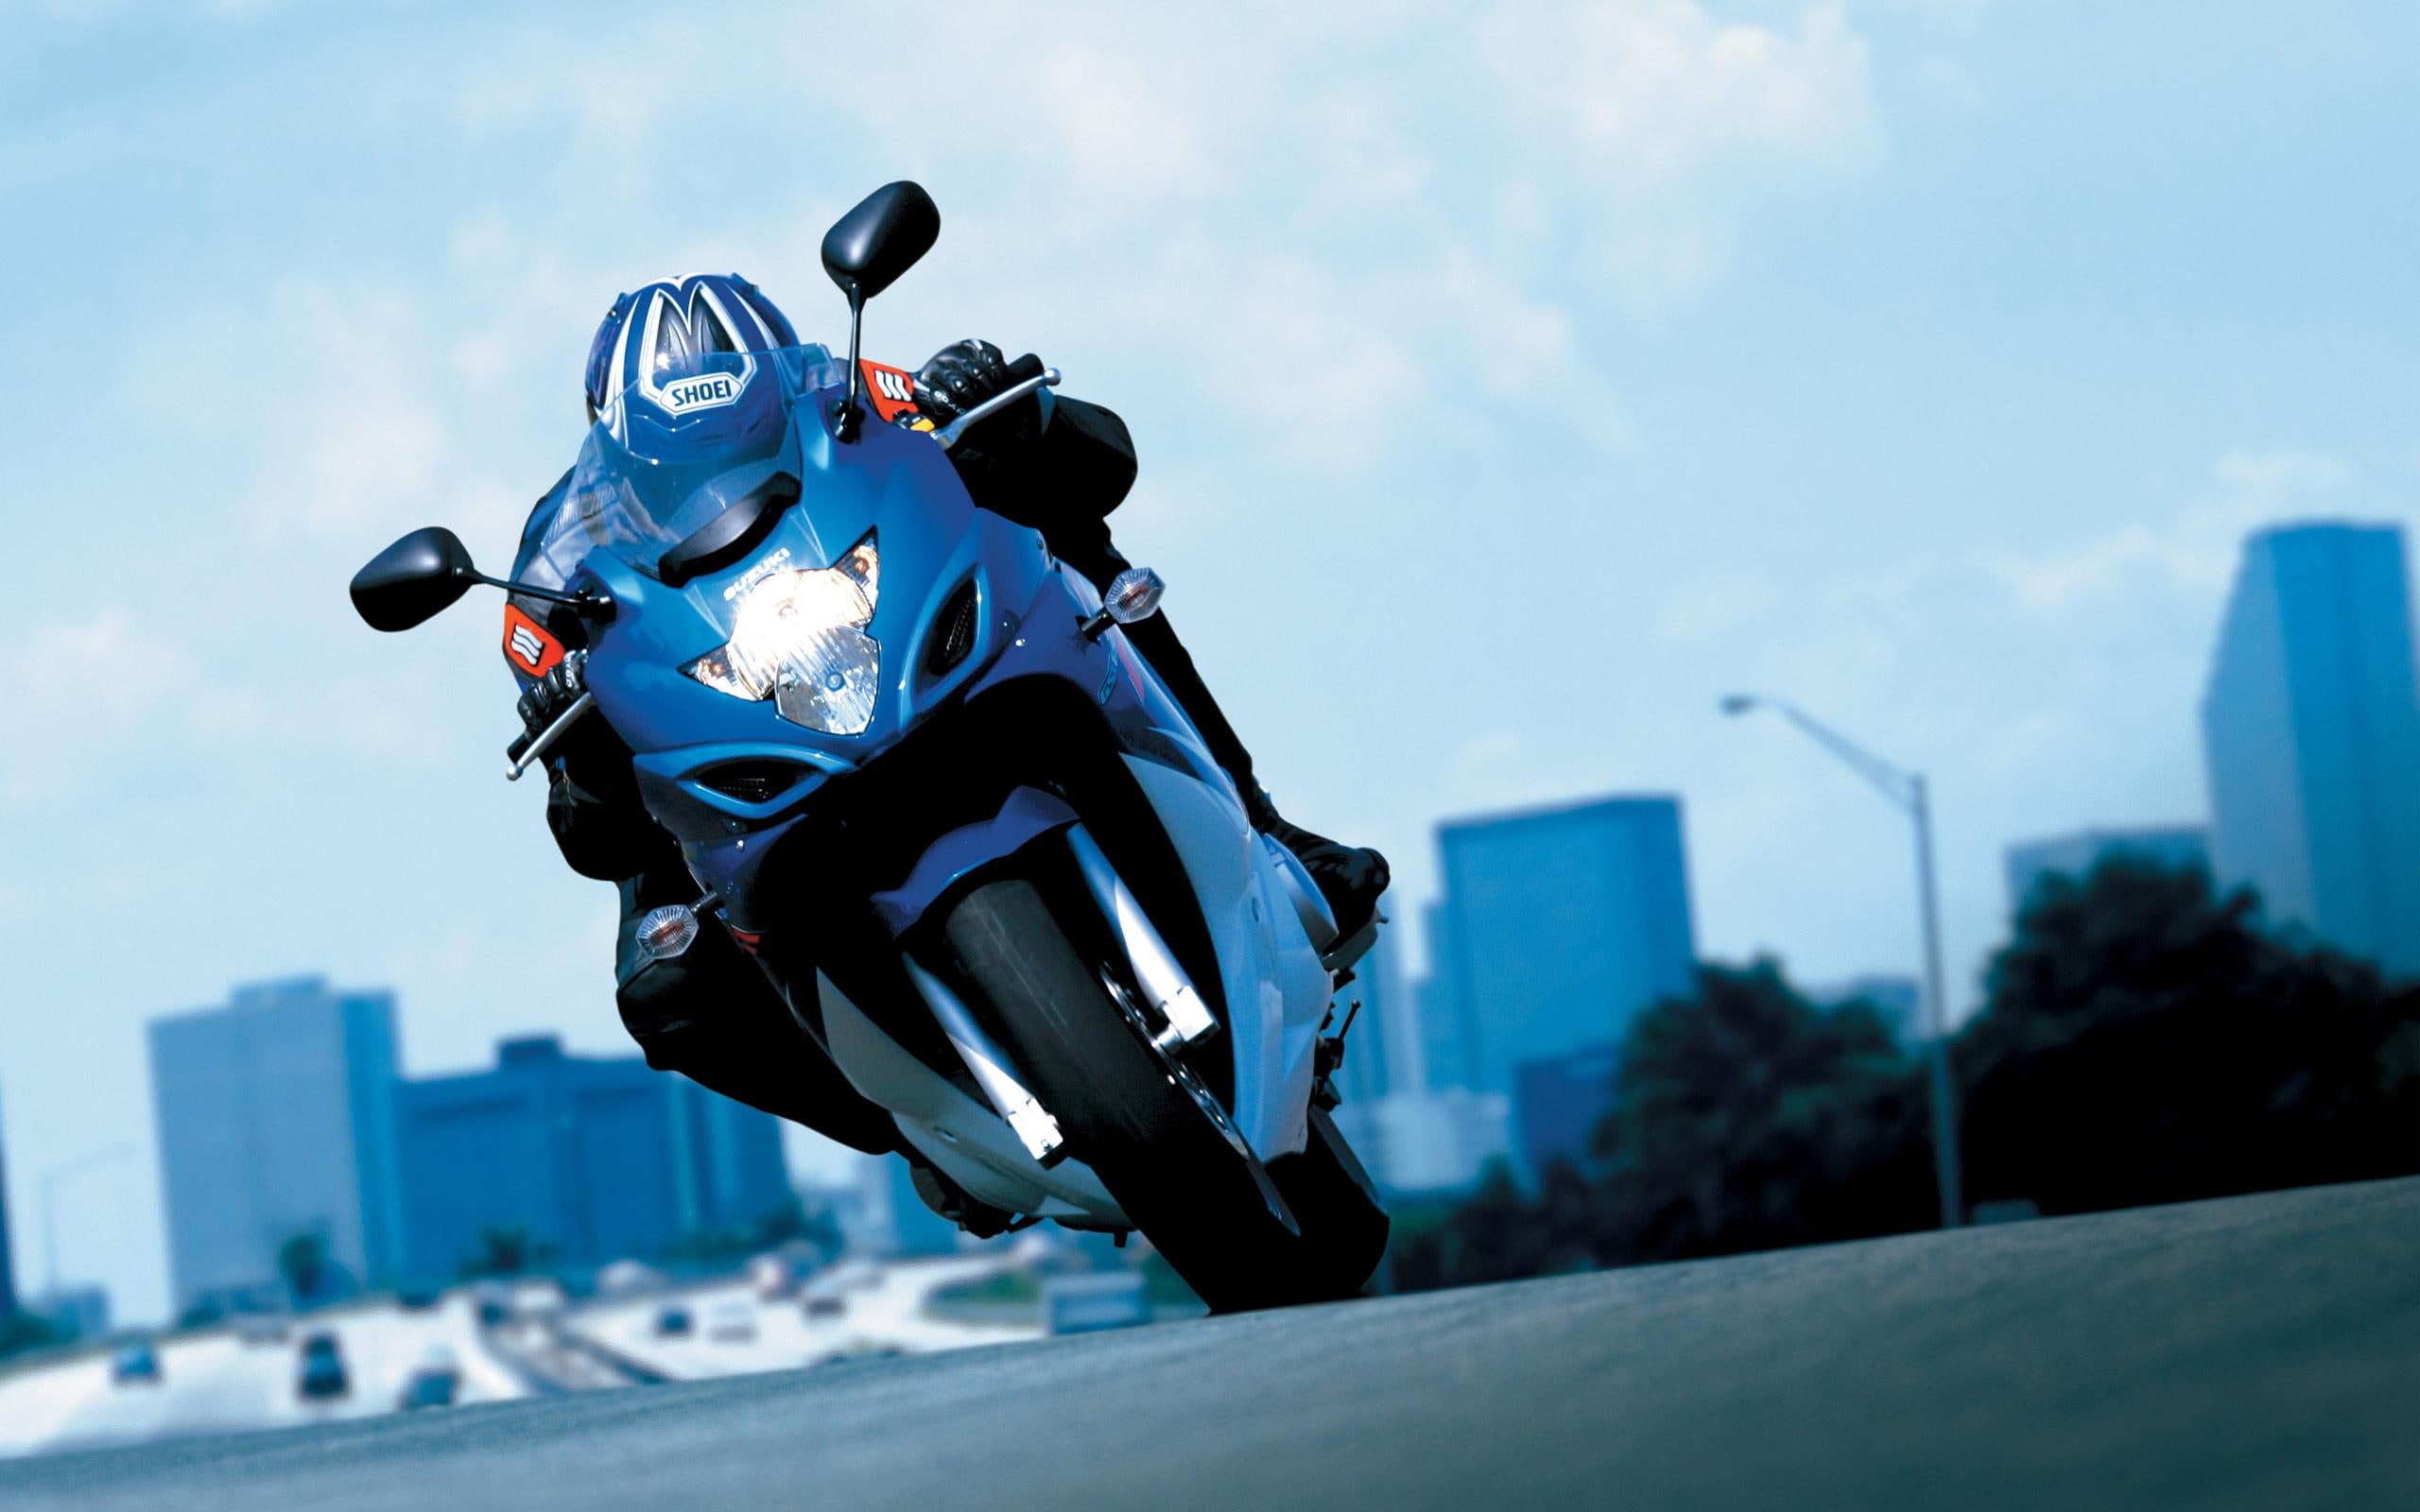 2008 Suzuki GSX 650F Action, bikes and motorcycles